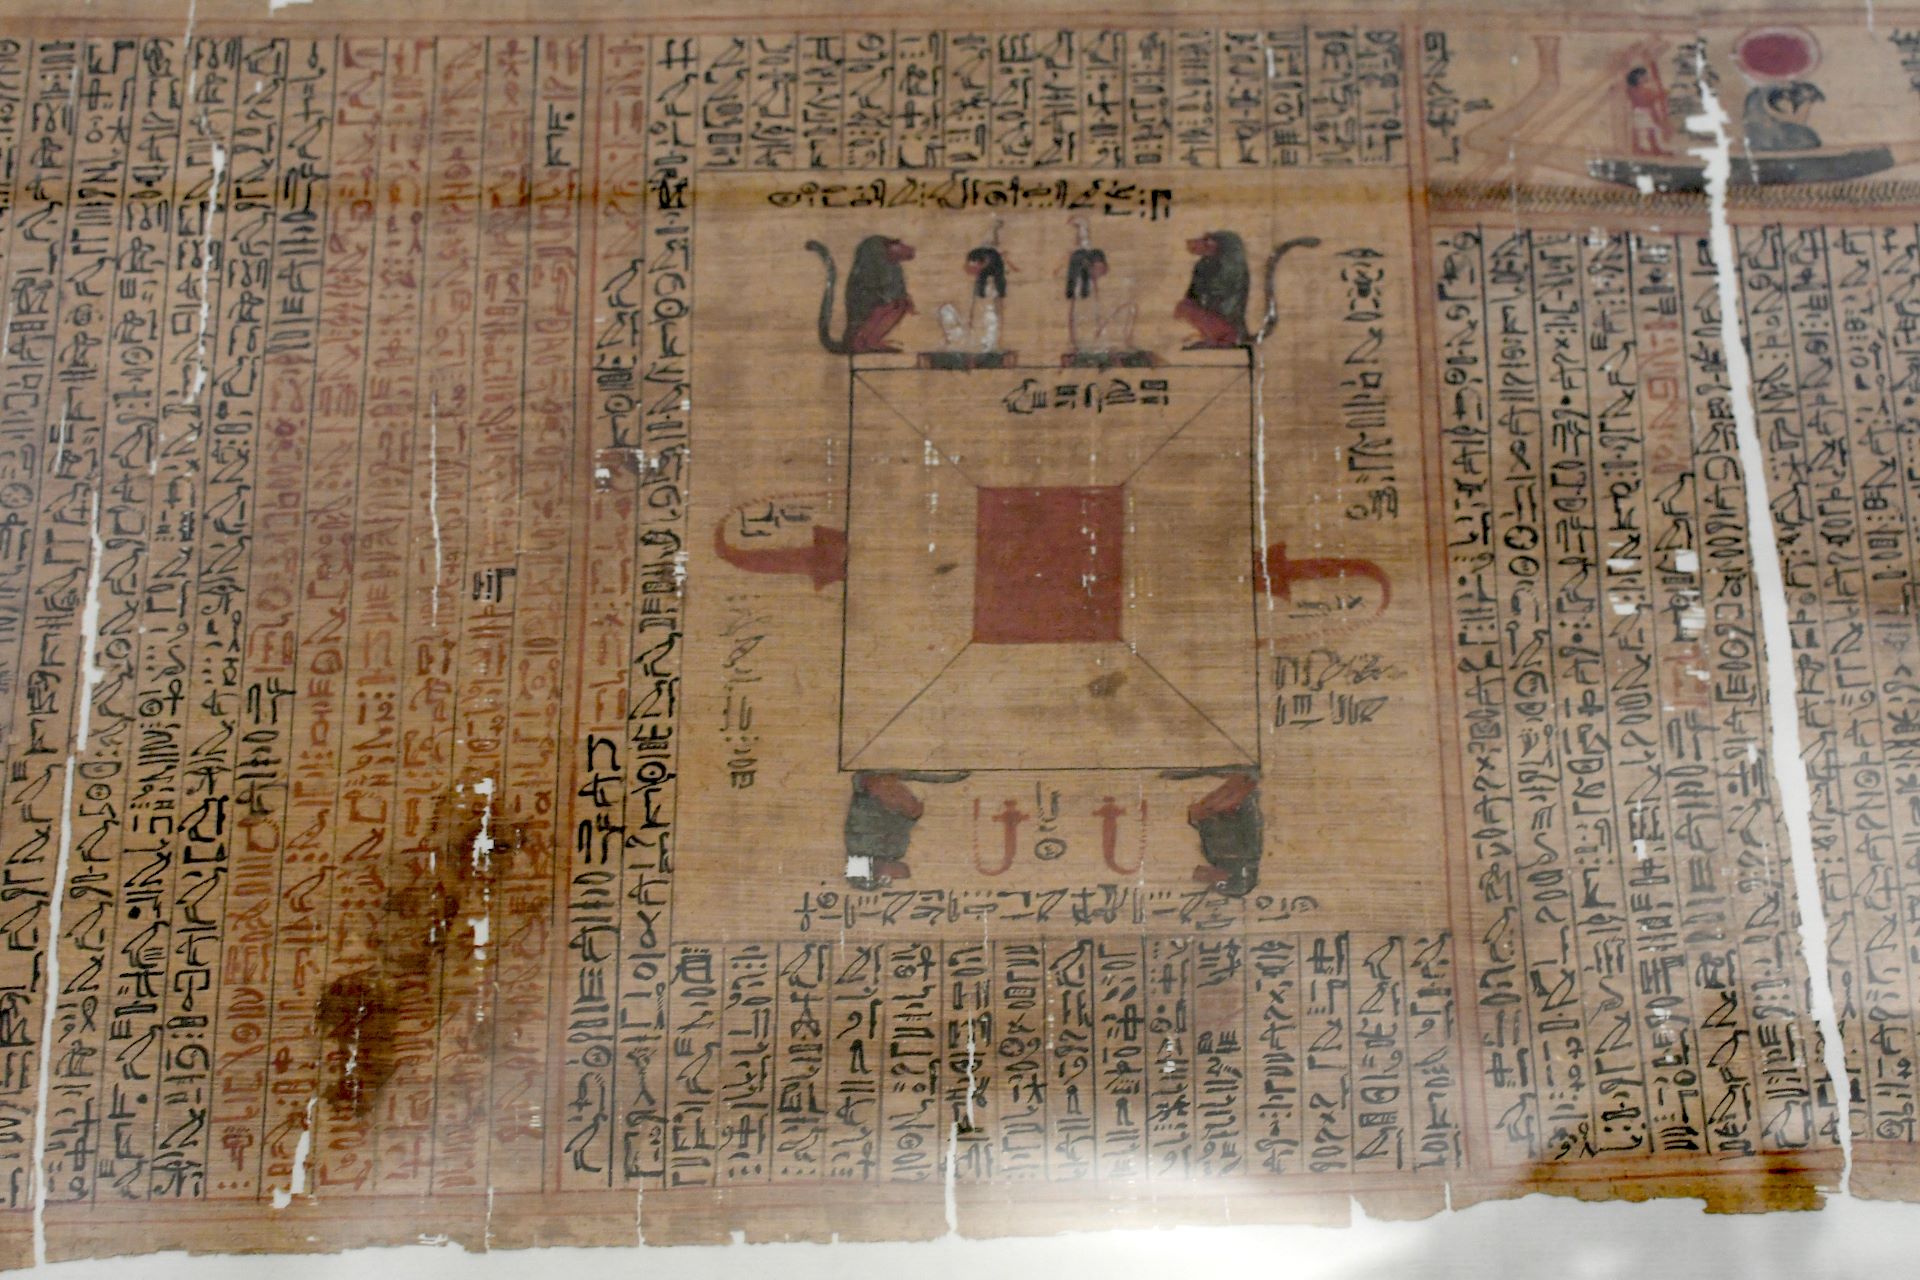 blog:2018-11-17-texte-aus-ferner-zeit:2018-11-17-wien-papyrusmuseum-050b.jpg